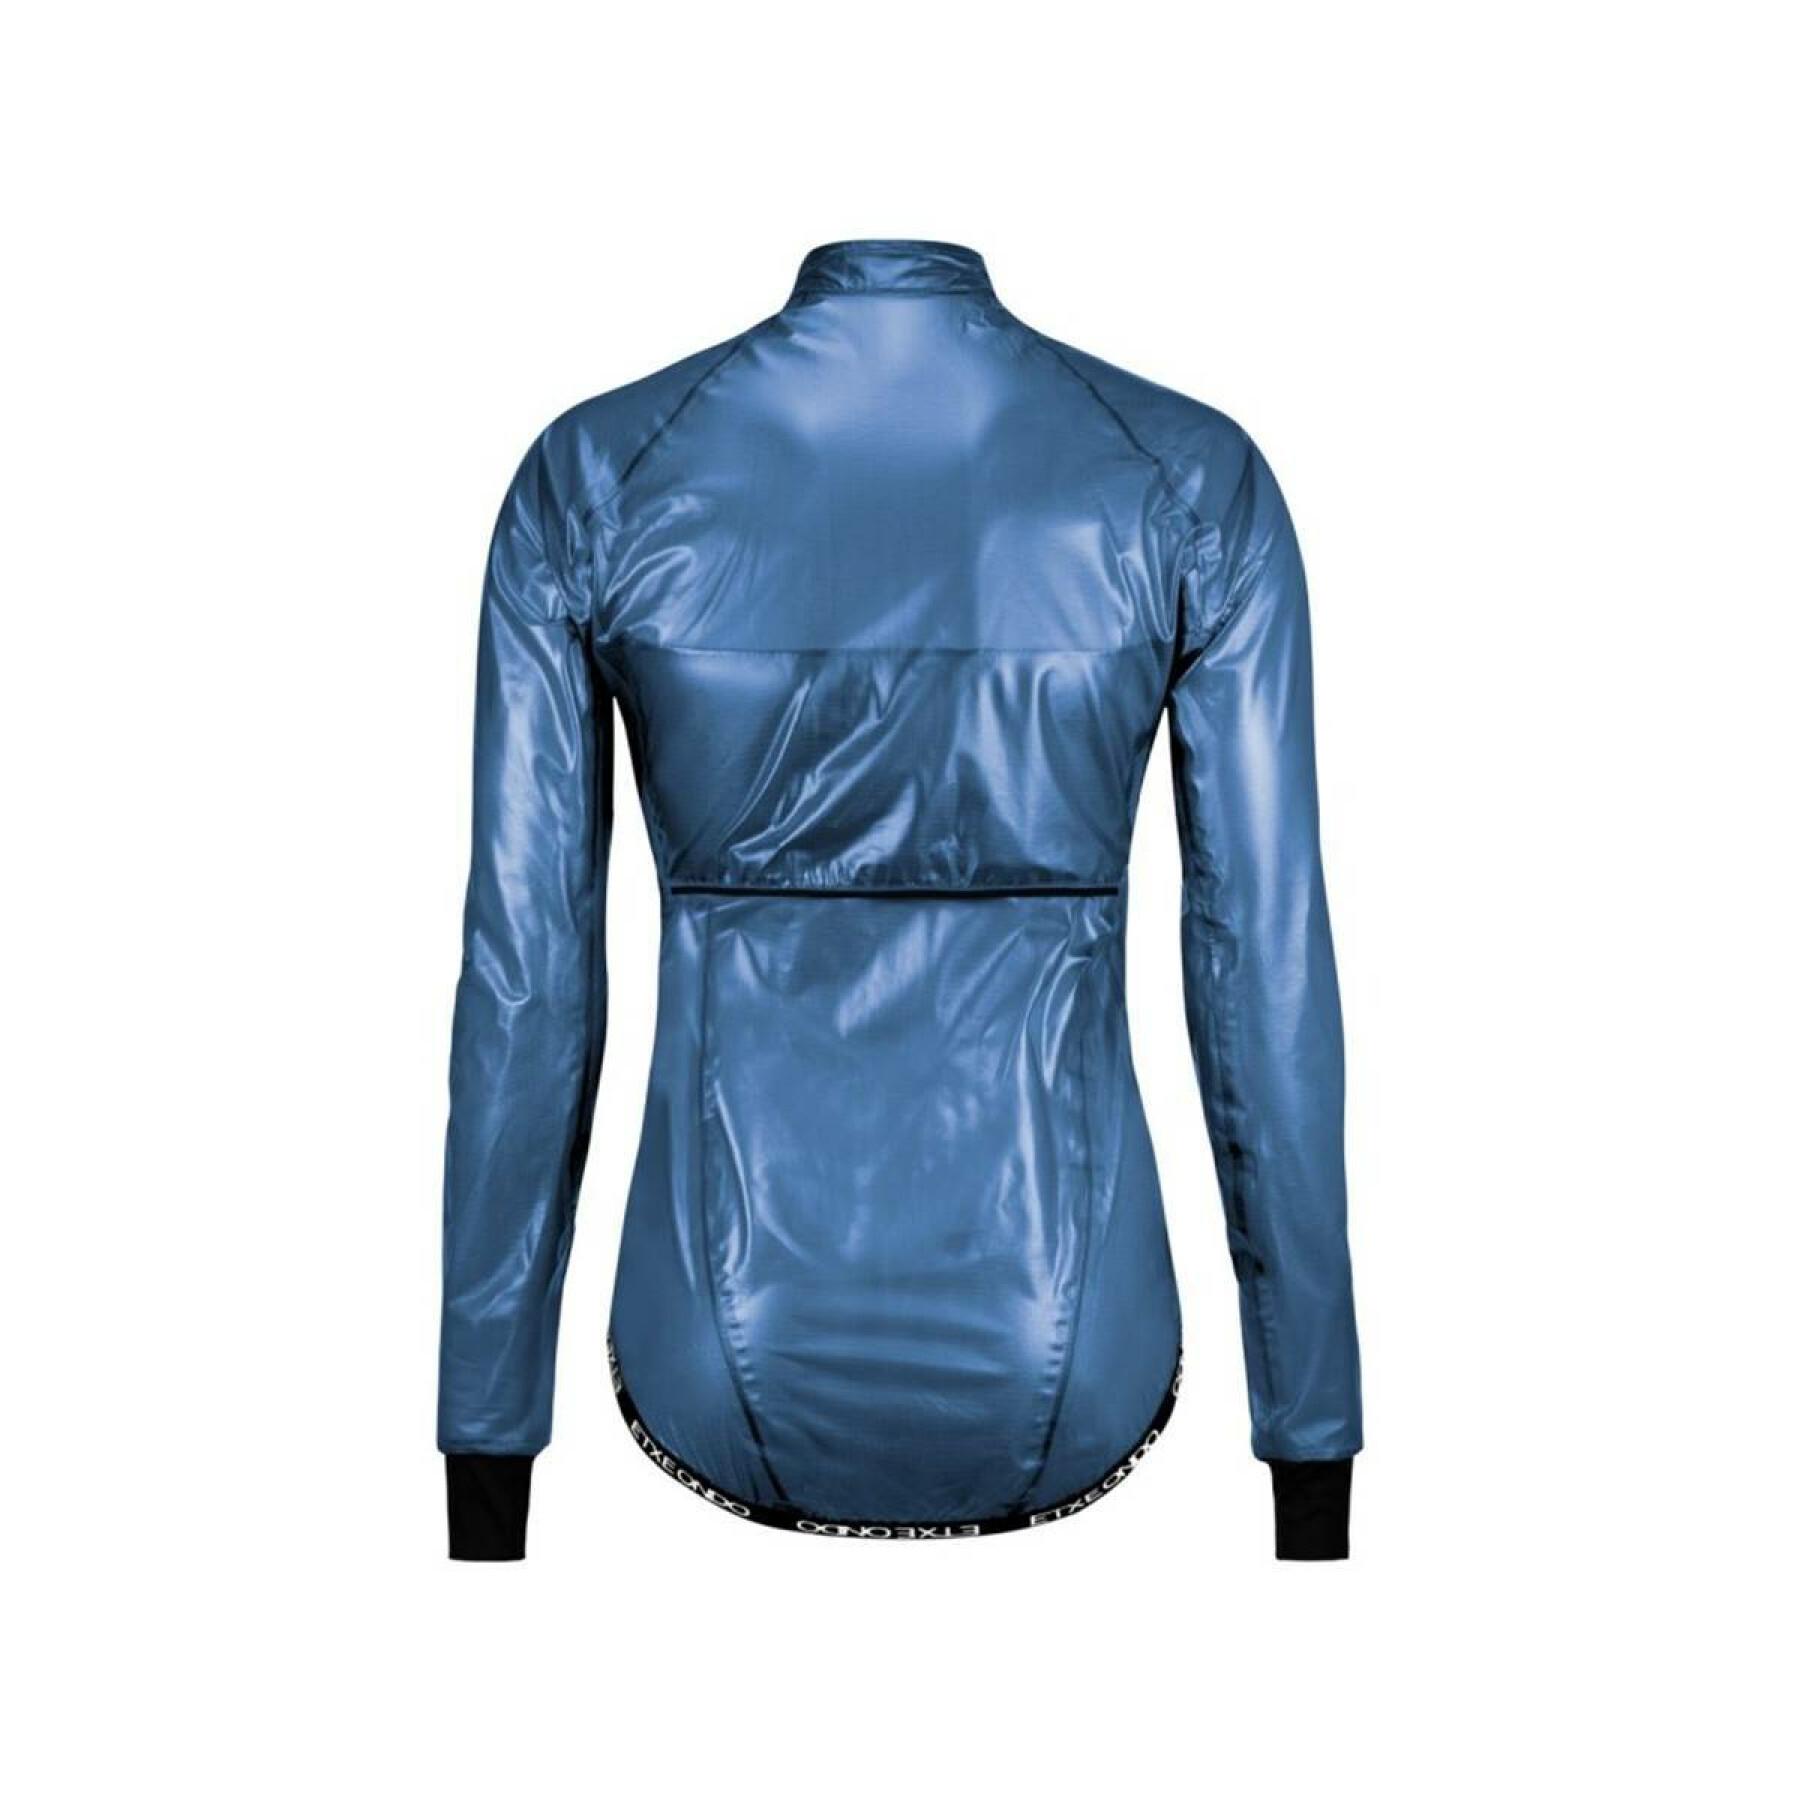 Women's waterproof jacket Etxeondo Busti